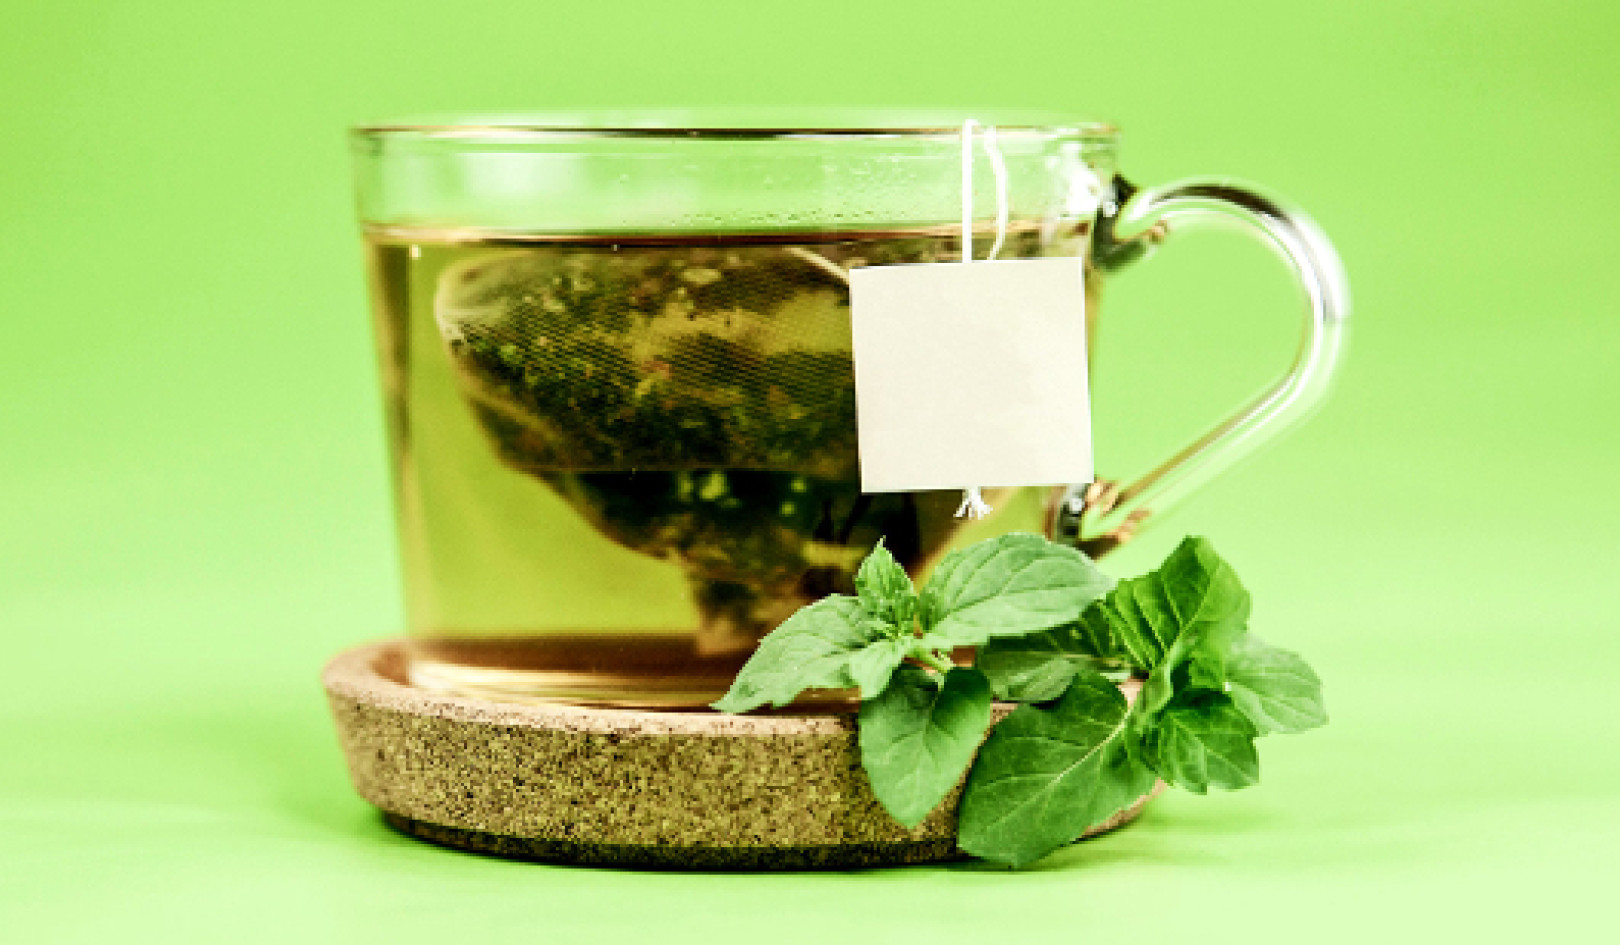 Соединения в вине и зеленом чае могут замедлить болезнь Альцгеймера?